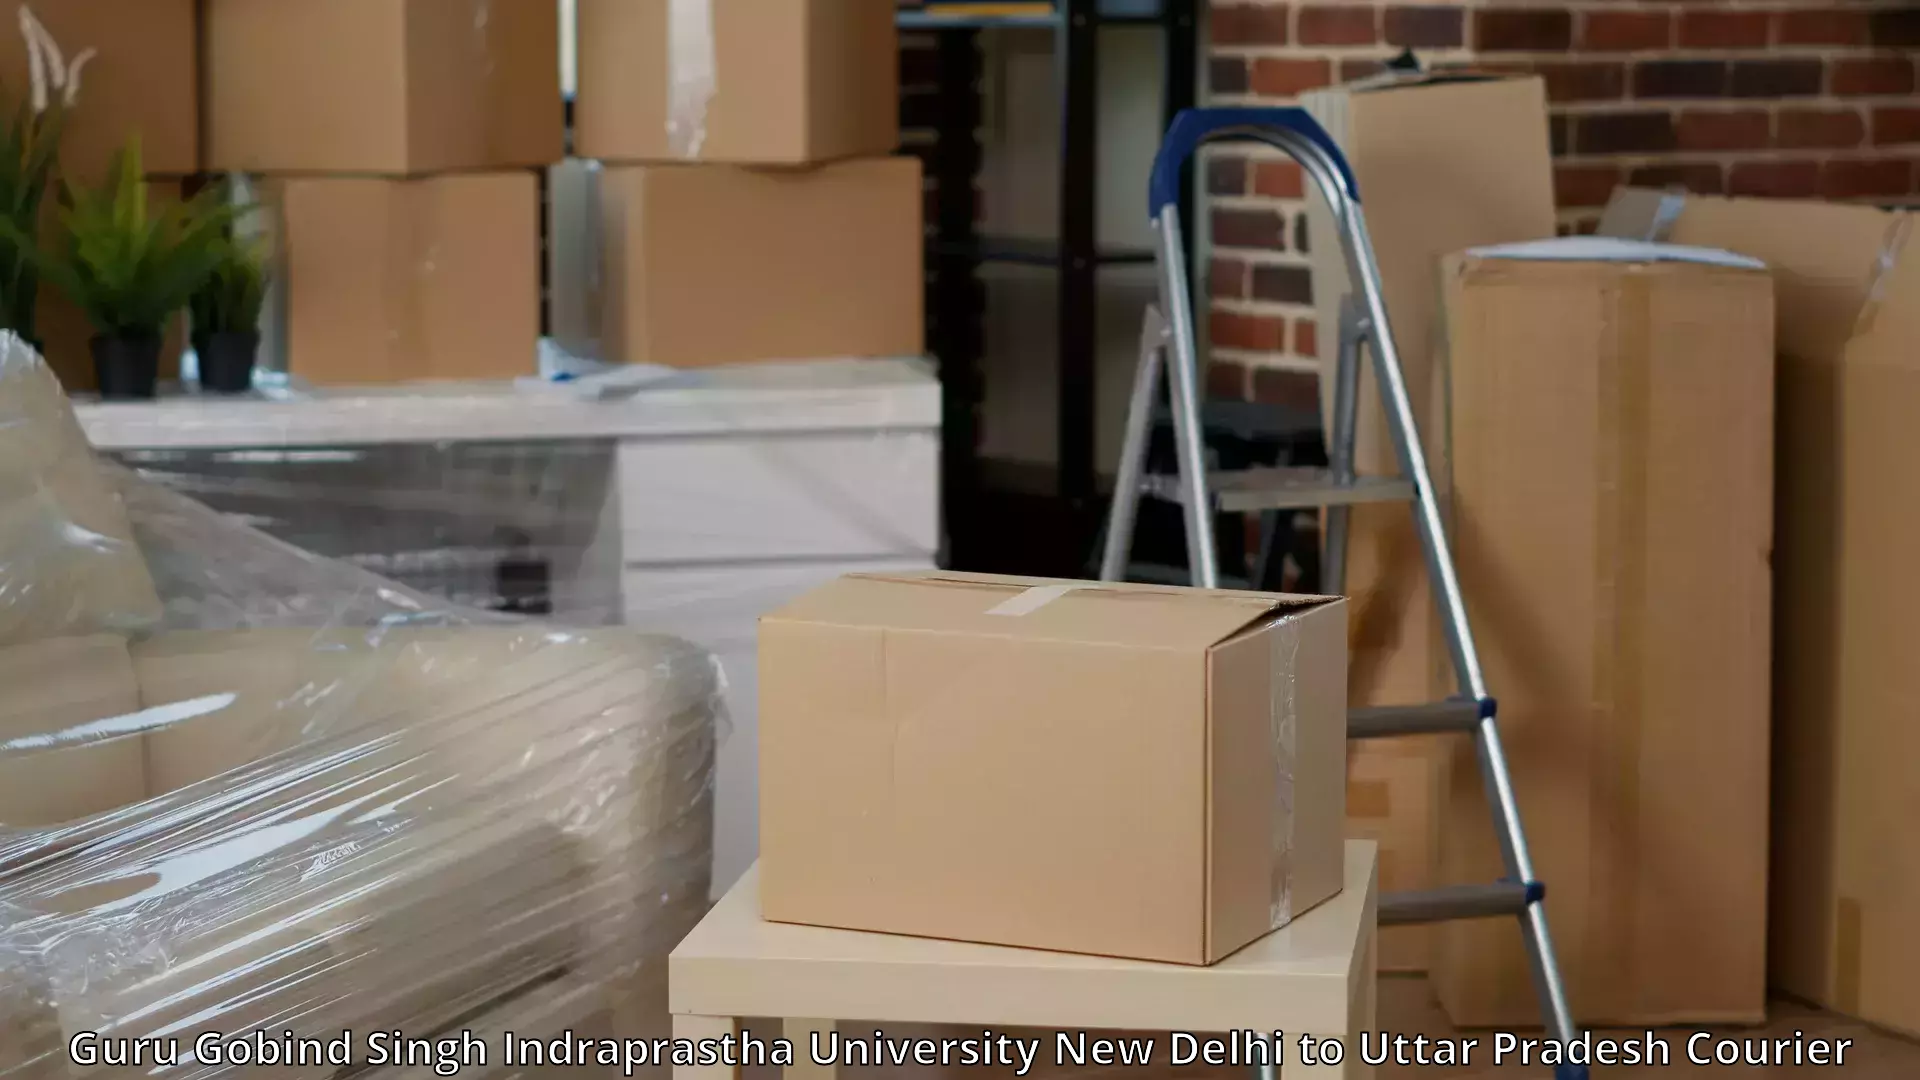 High-quality moving services Guru Gobind Singh Indraprastha University New Delhi to Mishrikh